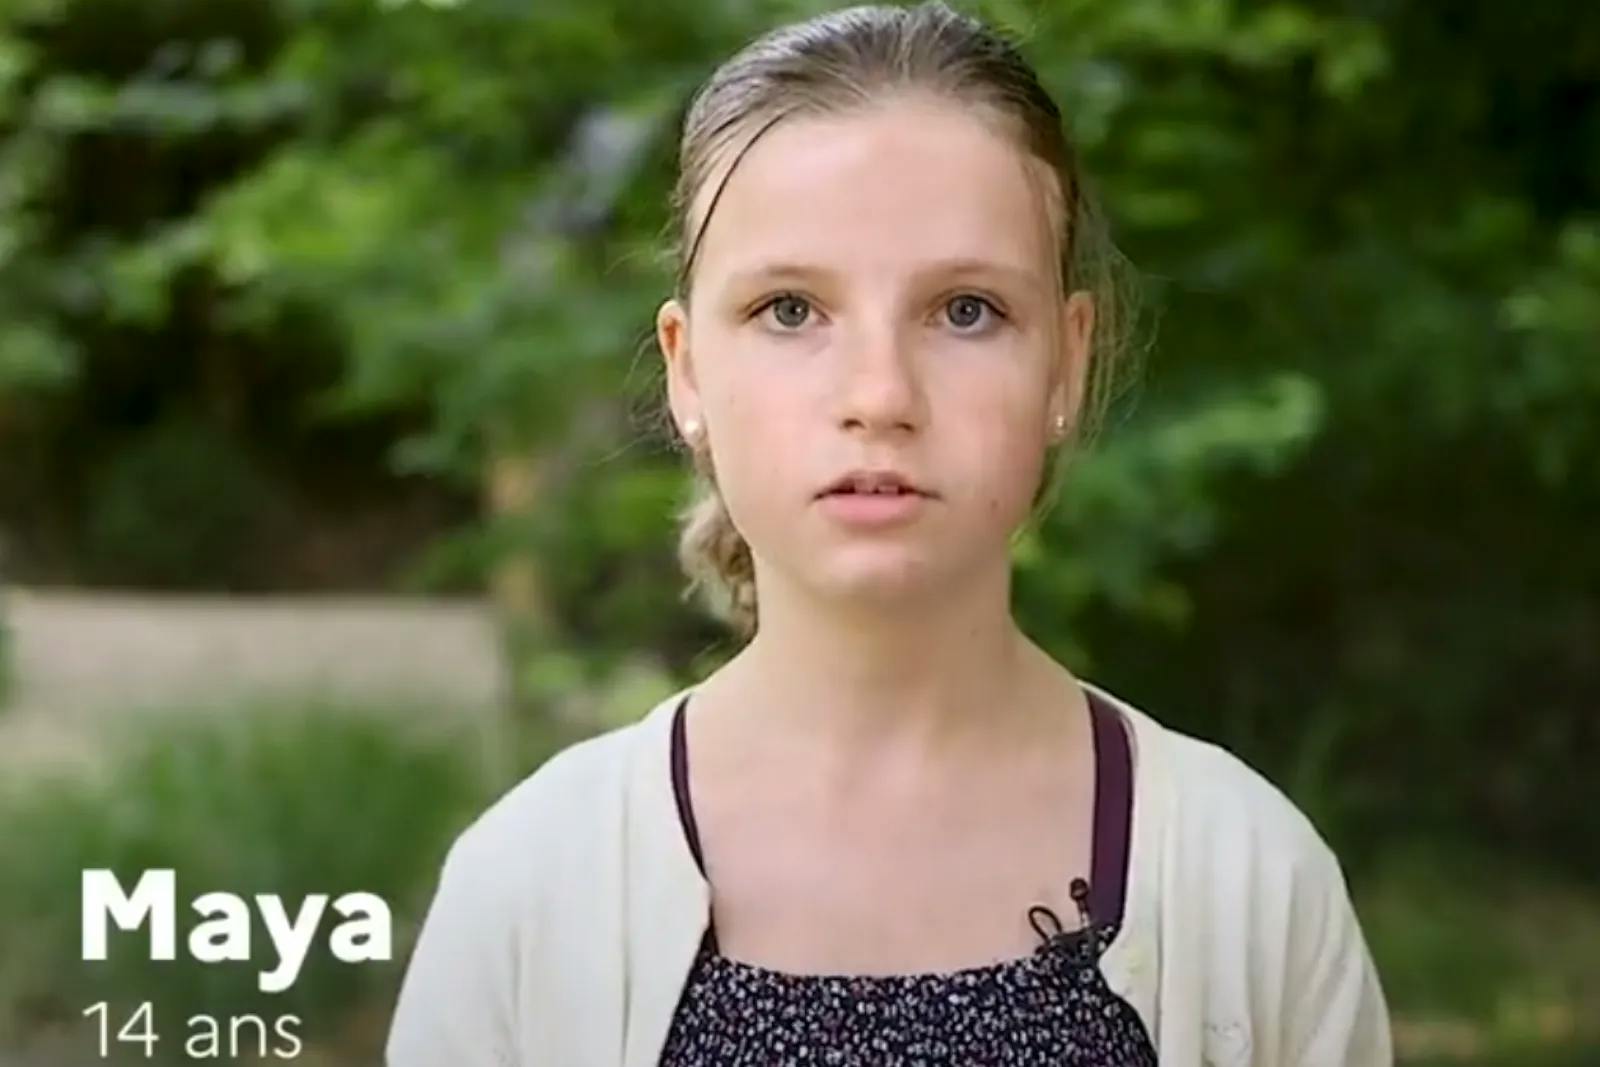 Frankreich: Weiße Kinder sprechen über ihren Traum – Video sorgt für Empörung